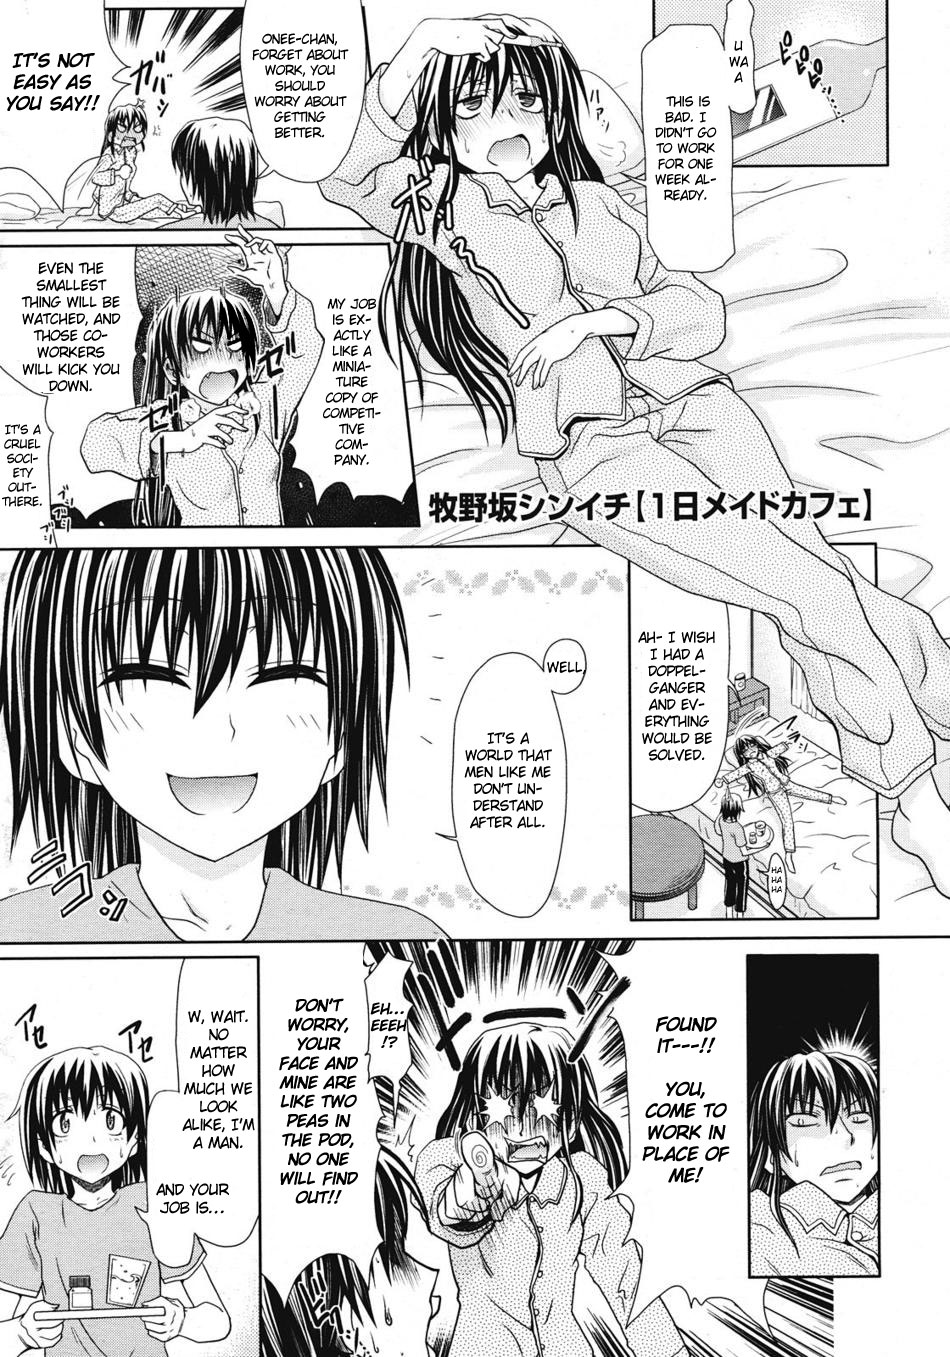 Crossdressing Maid / Straight Hentai Manga.